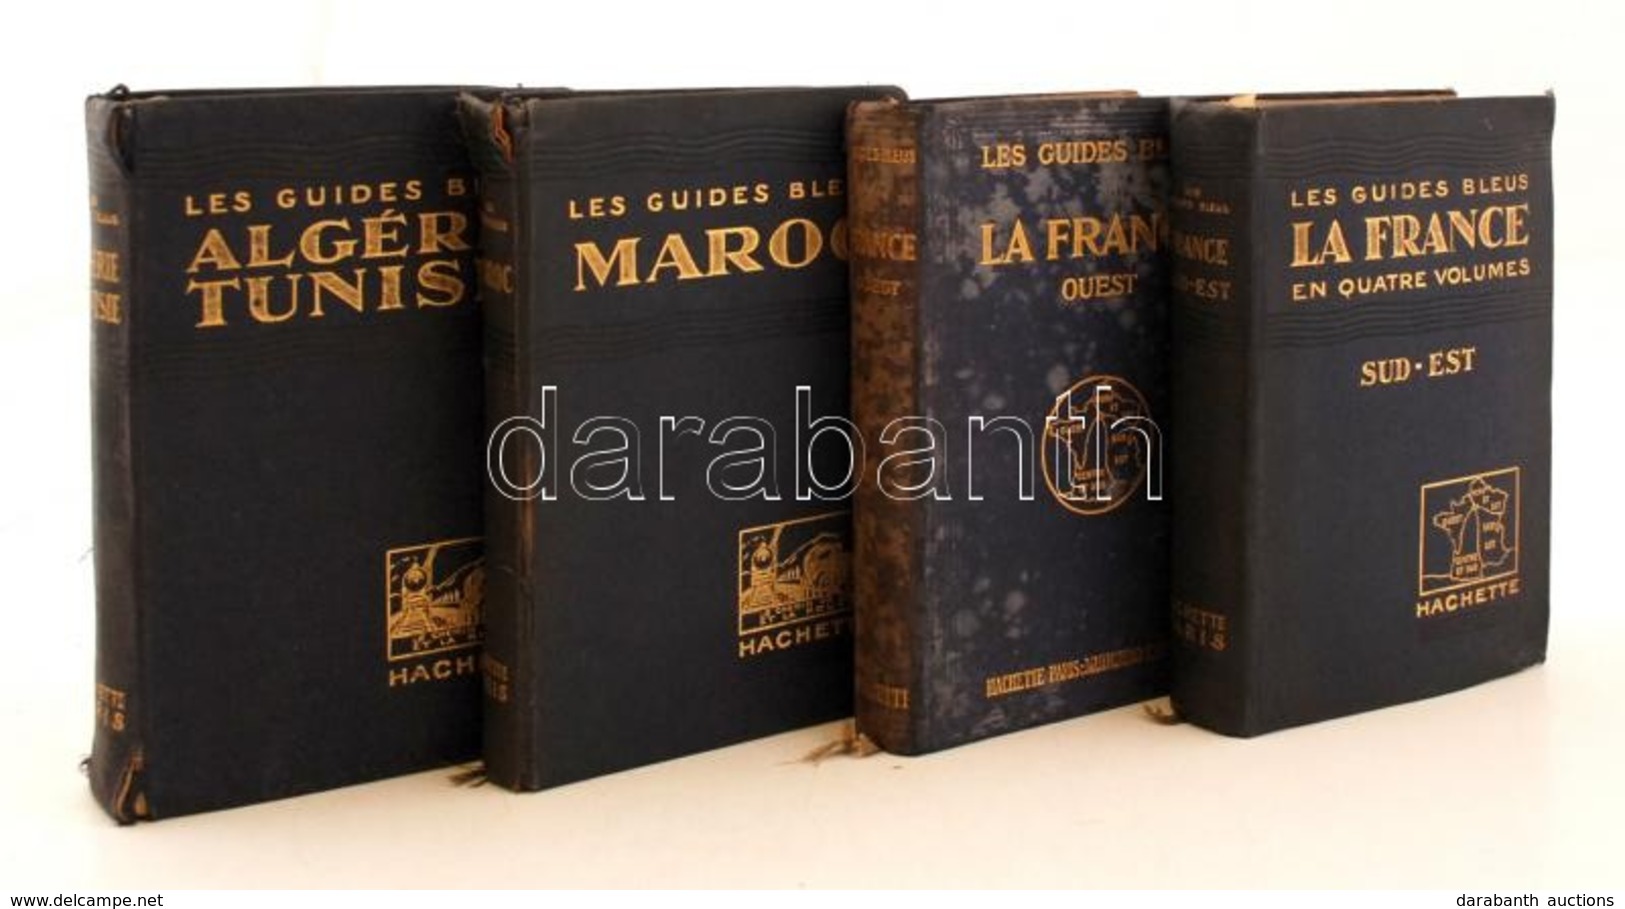 Les Guides Blues Francia Nyelvű útikönyv Sorozat 4 Kötete. (La France - Sud-est, La France - Quest, Maroc, Algérie-Tunis - Unclassified